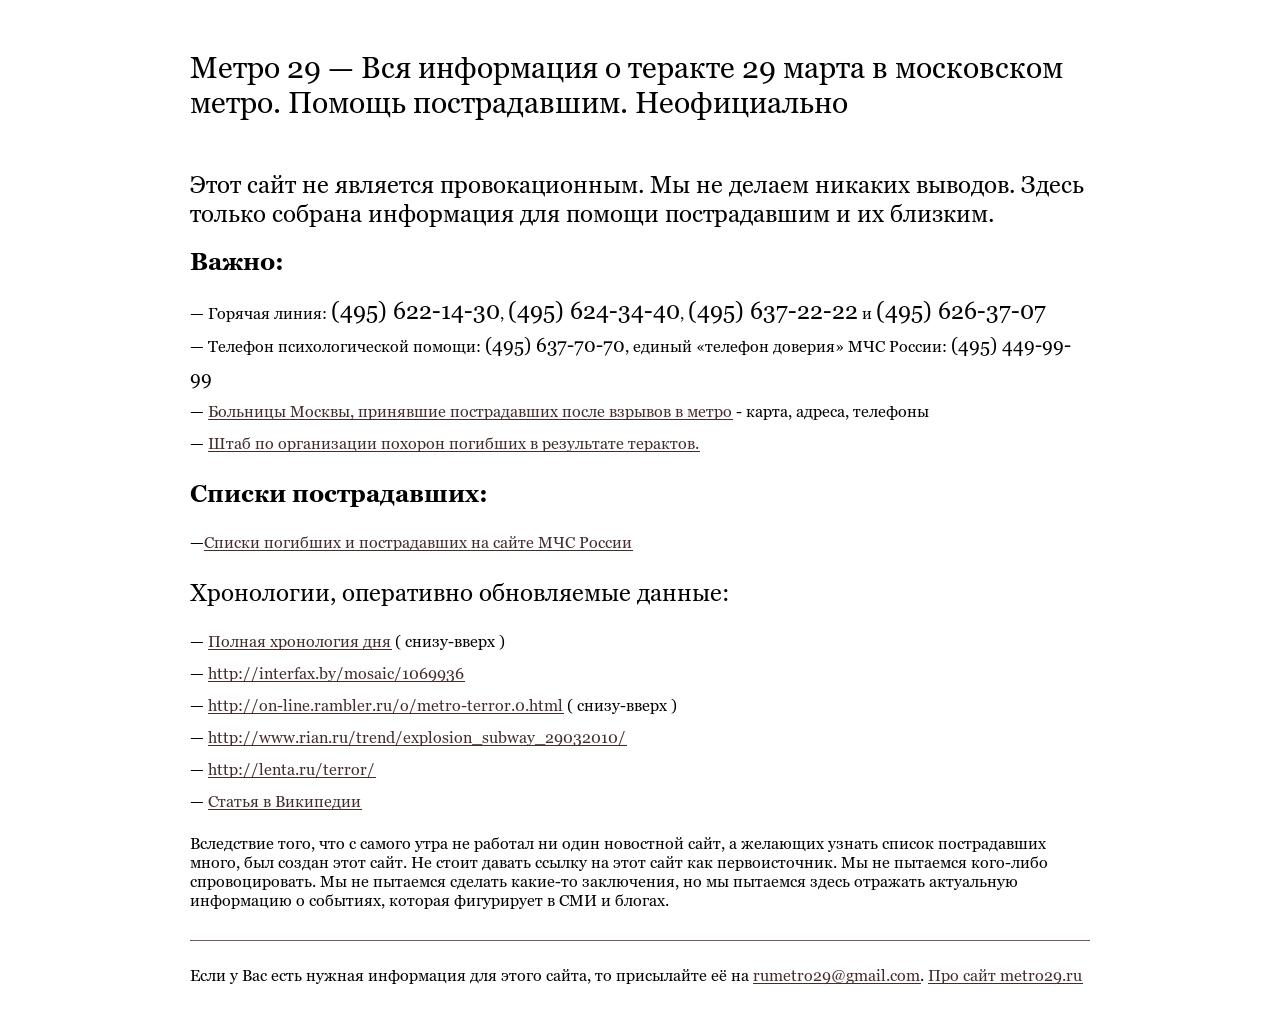 Изображение сайта metro29.ru в разрешении 1280x1024